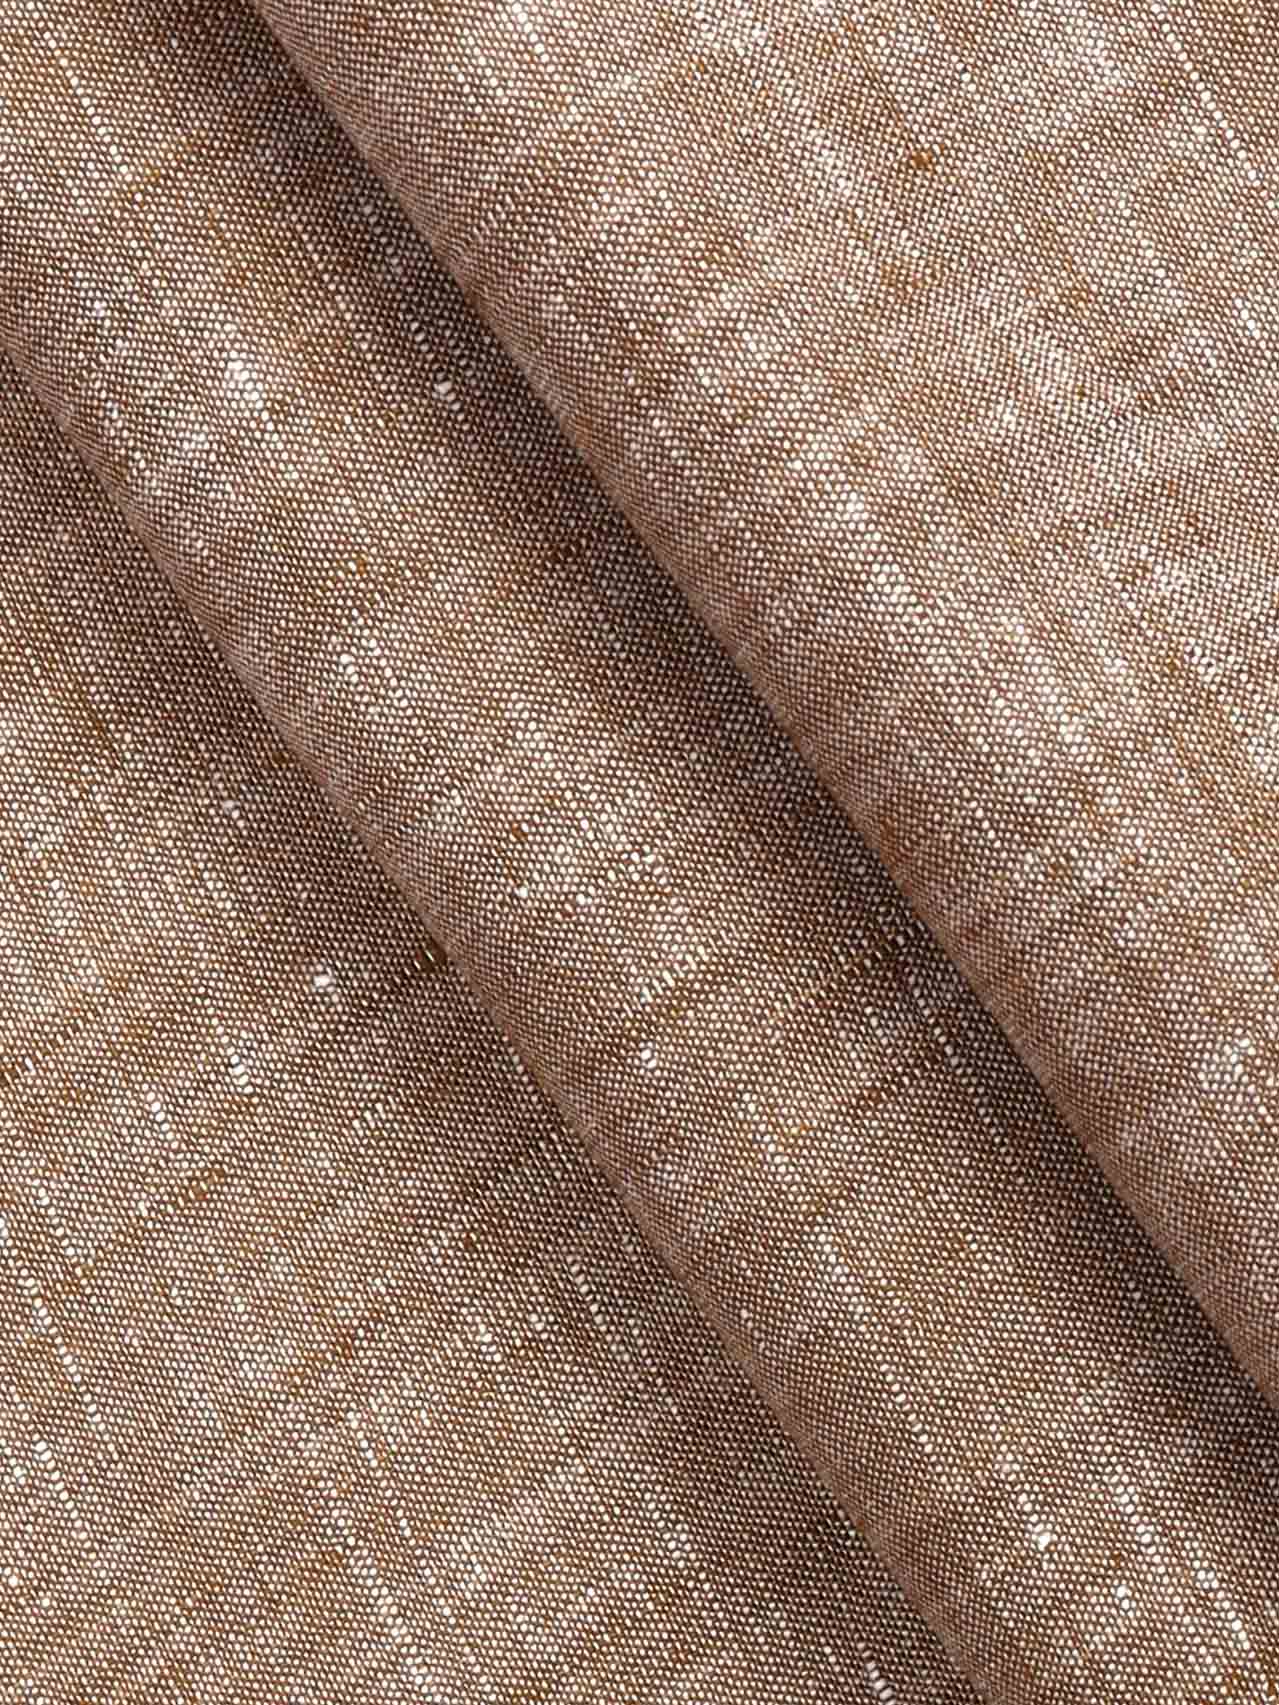 Brown Plain Material Fabric at Rs 80/meter in New Delhi